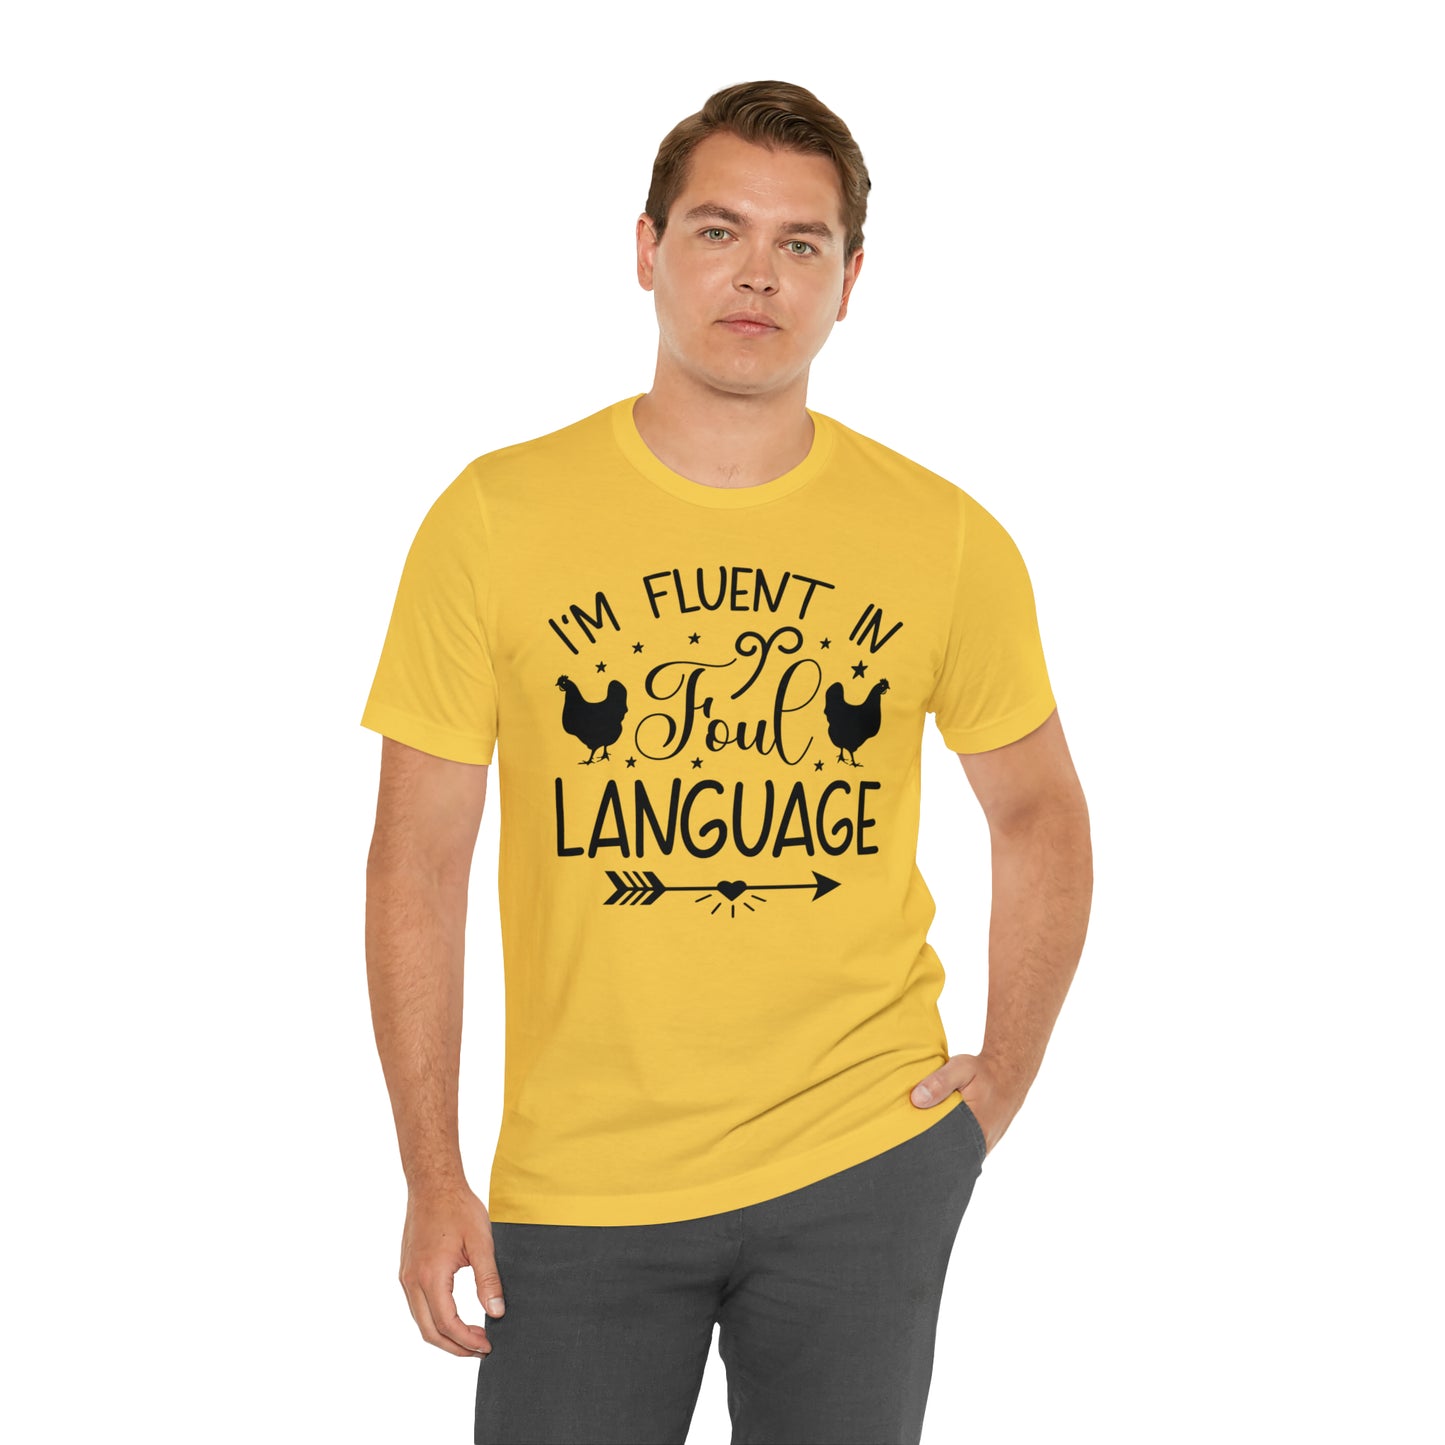 I'm Fluent in Fowl Language Short Sleeve Chicken T-shirt